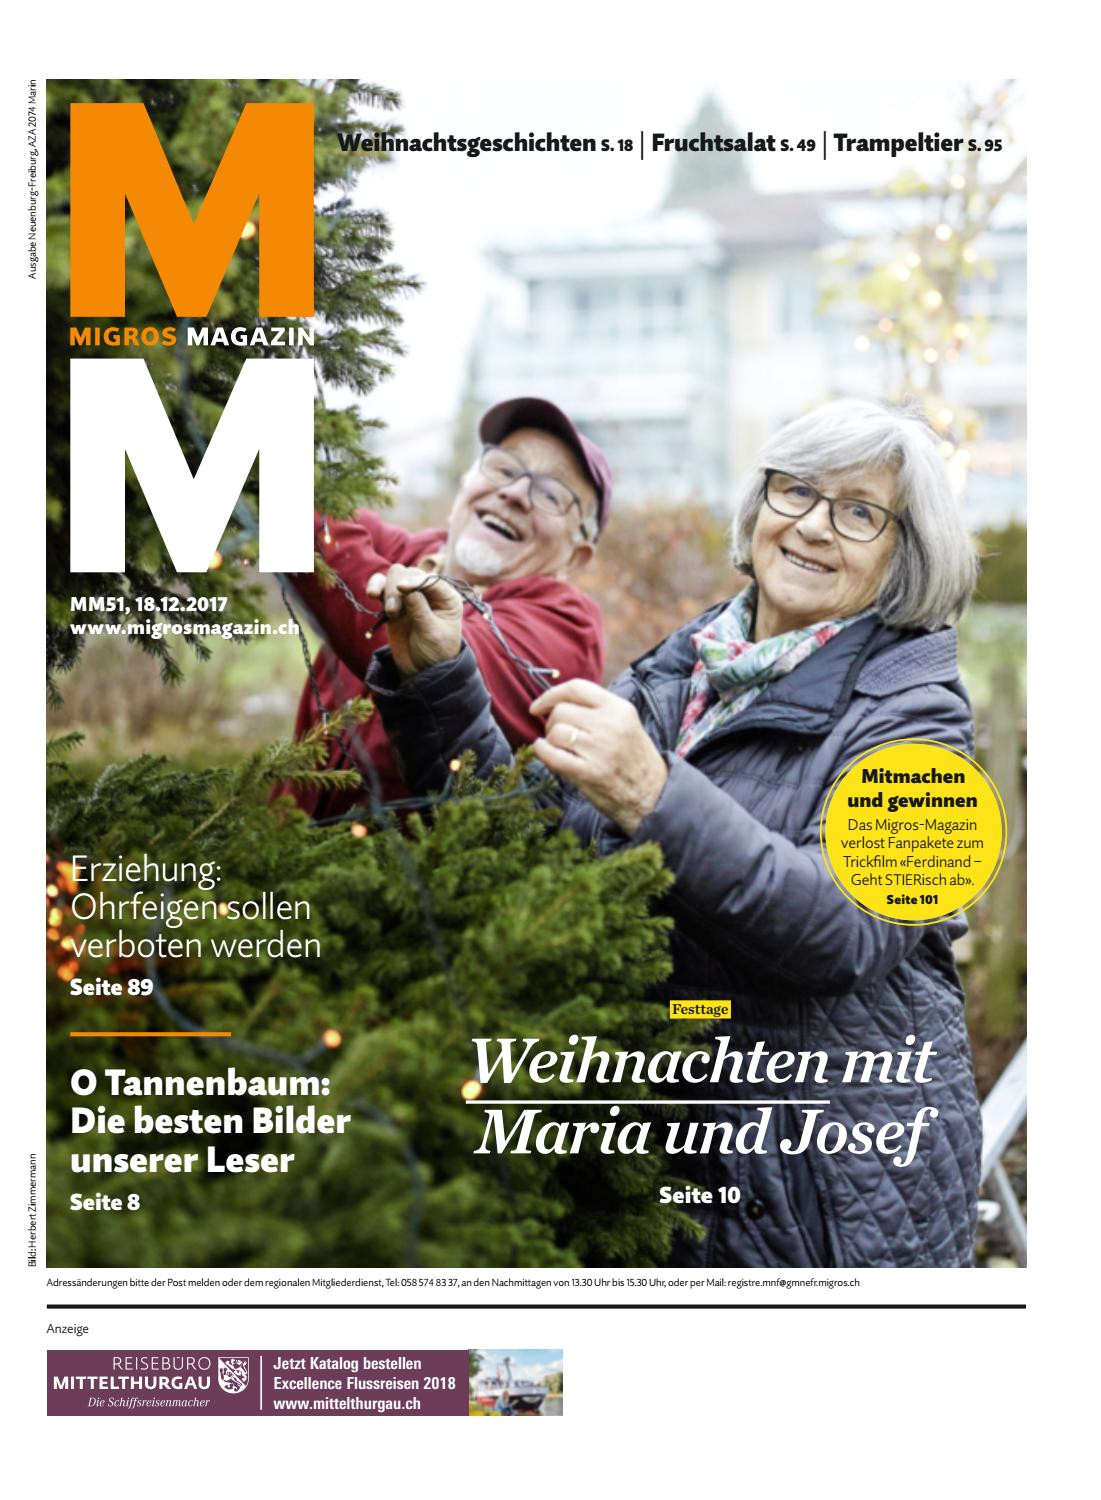 College Of Marin Catalog Migros Magazin 51 2017 D Ne by Migros Genossenschafts Bund issuu